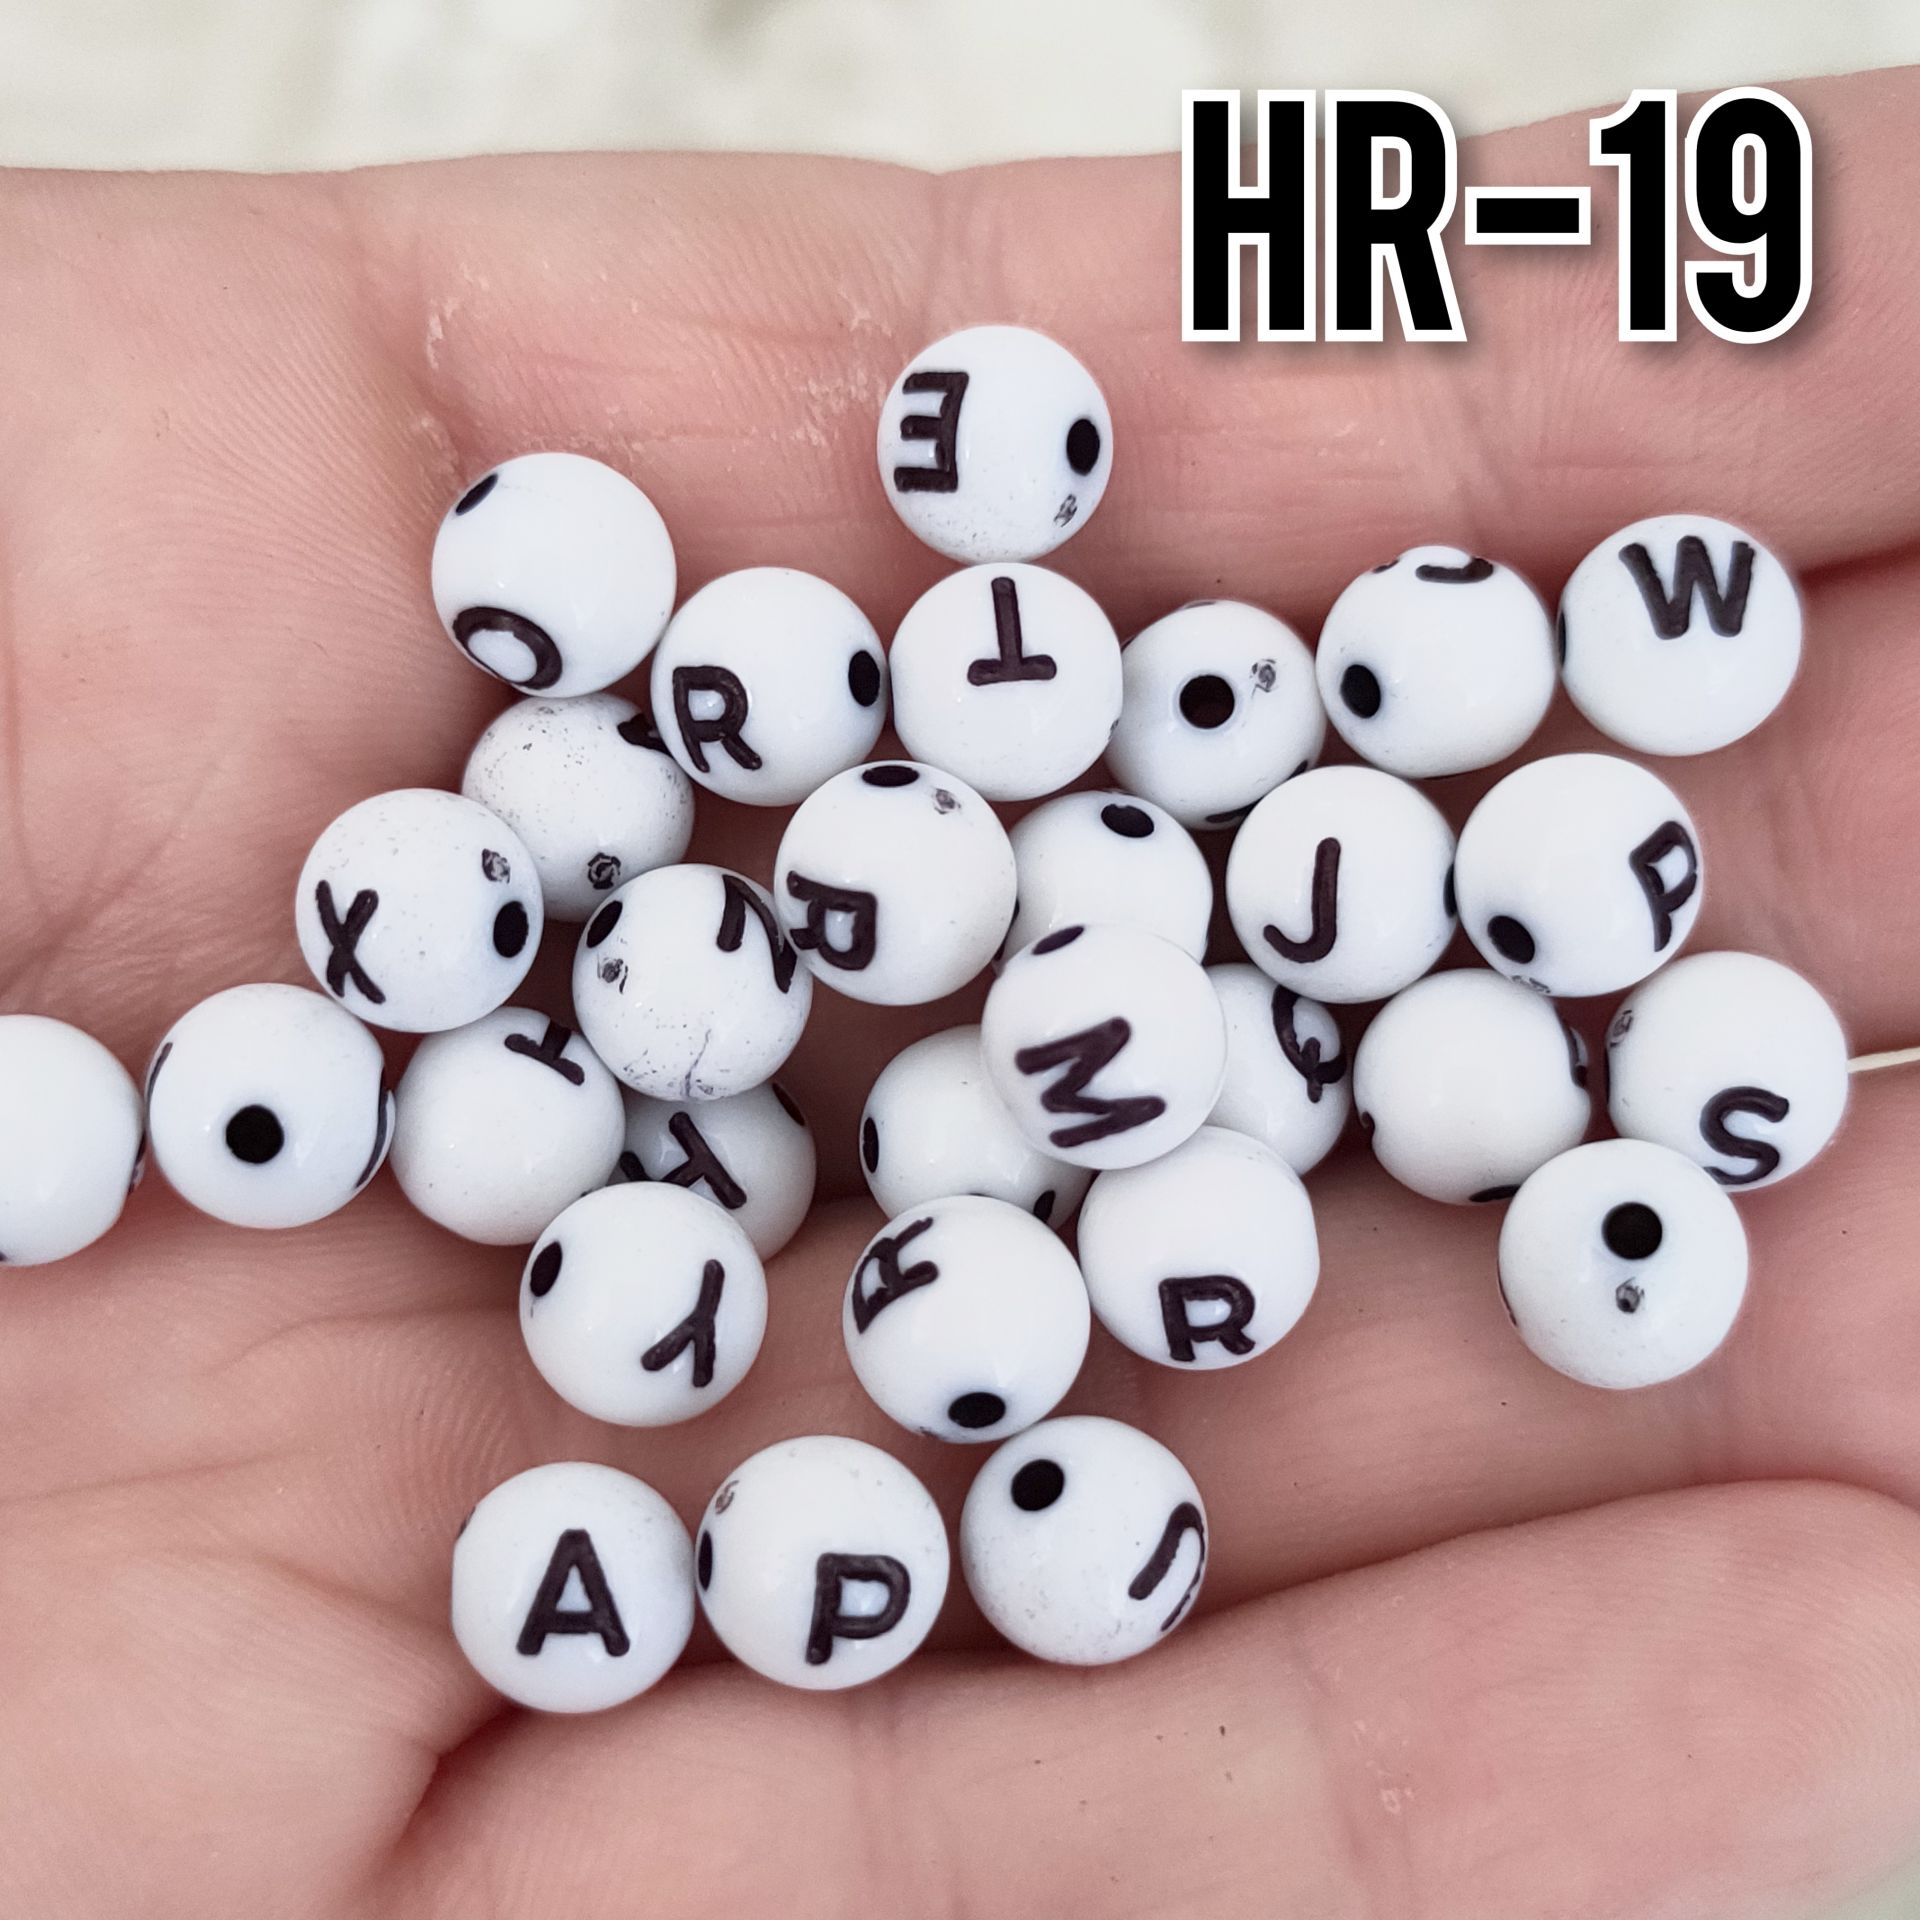 HR-19 Beyaz Renk Üzeri Siyah Yazılı Plastik Yuvarlak Harf Boncuk 8 mm